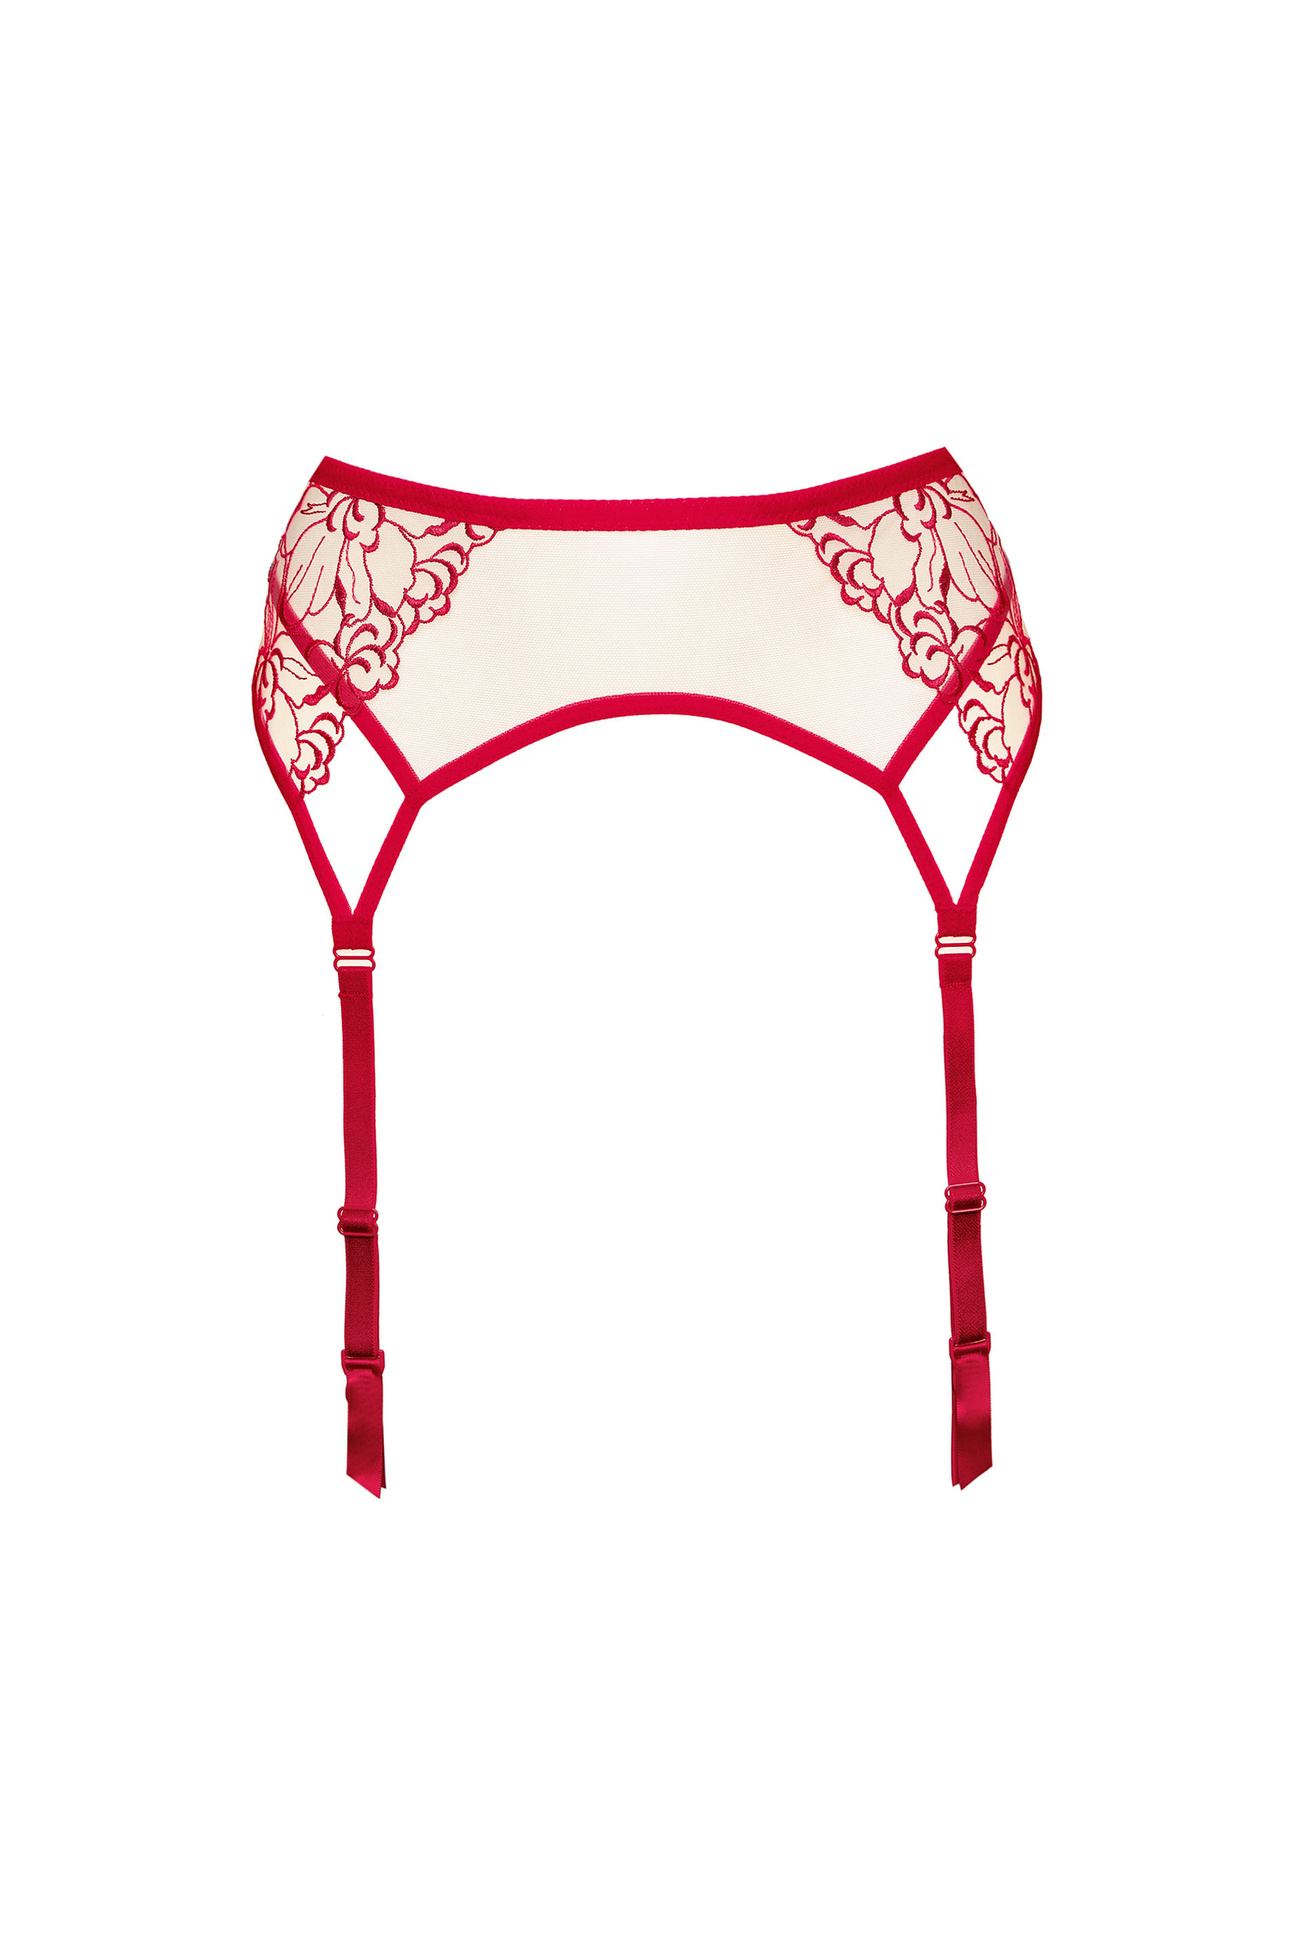 Mistress embroidered garter belt red